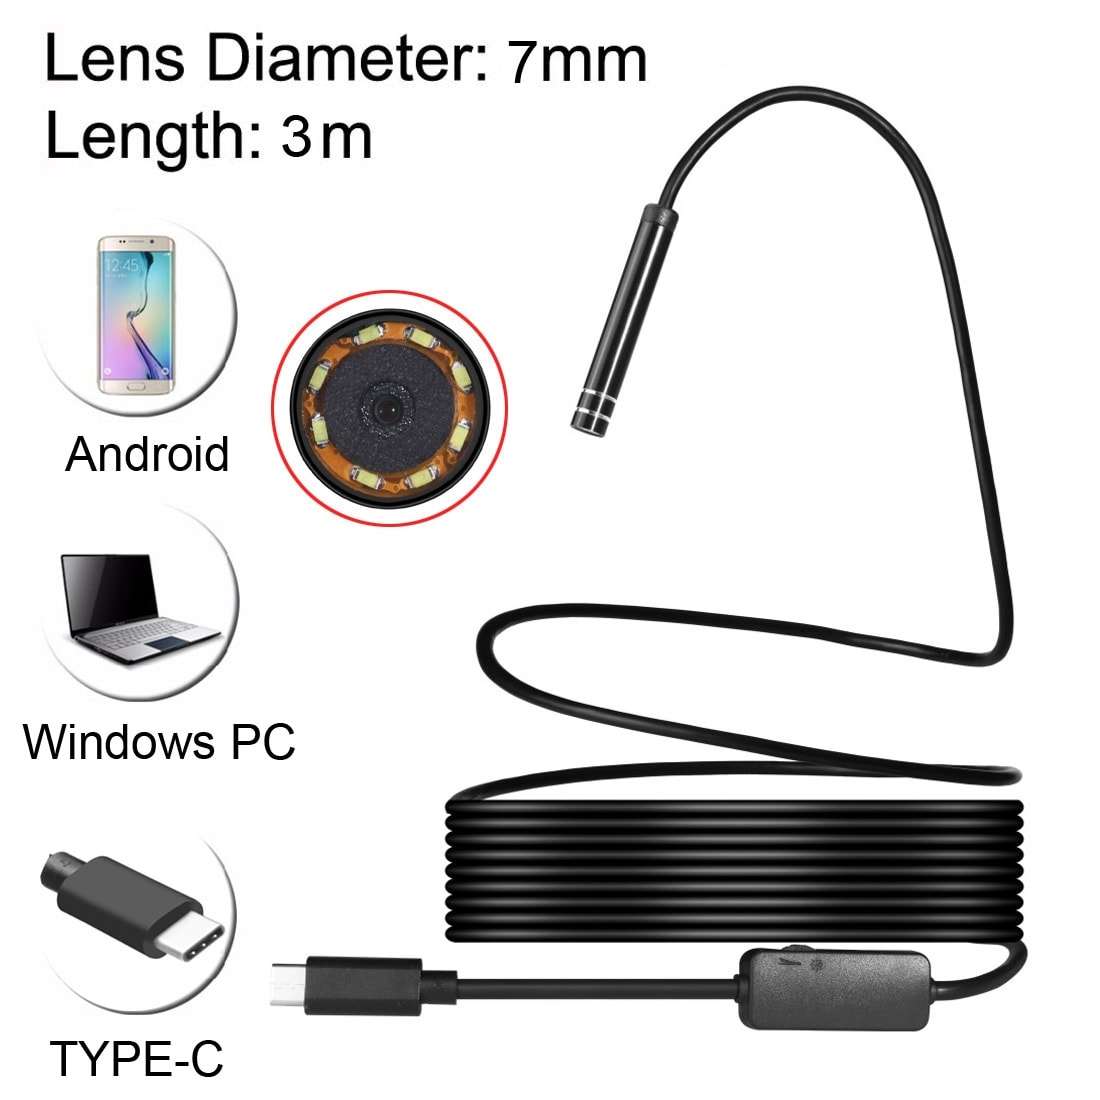 Inspektionskamera USB Typ-C med 6 LED & USB Adapter - 3 meter / 7mm